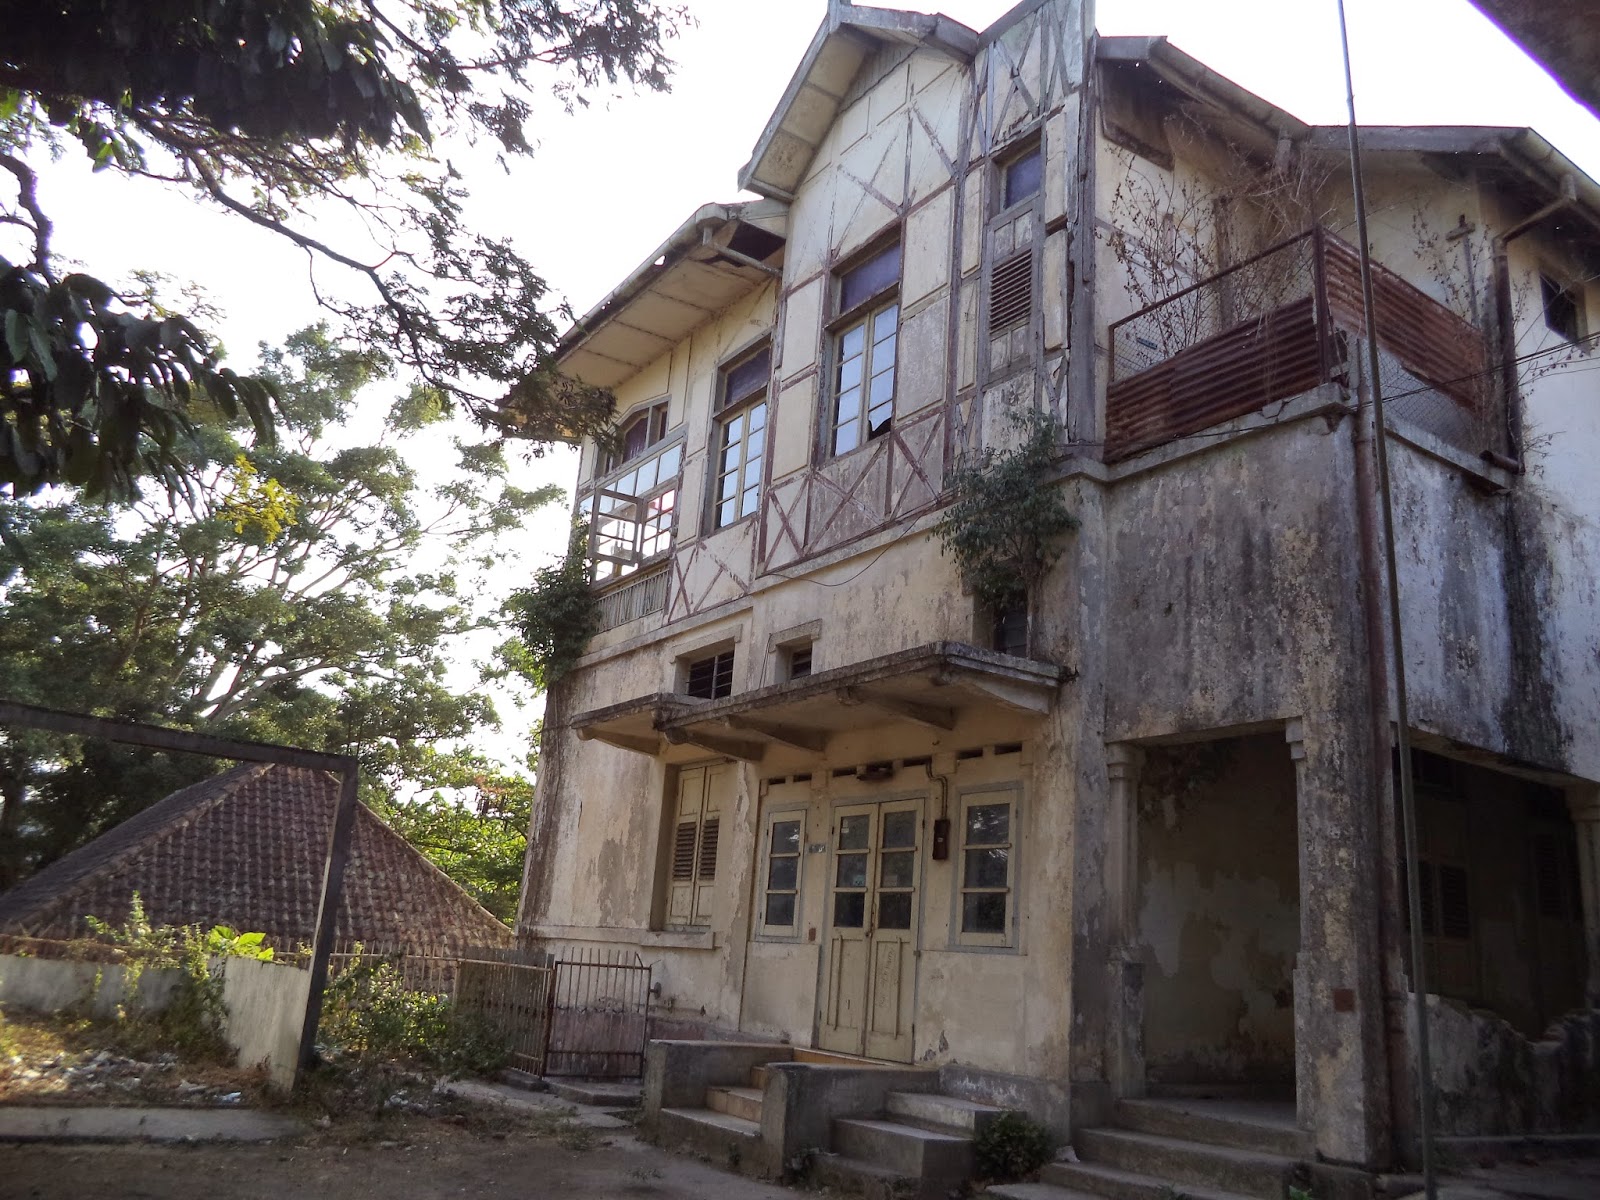 Cerita di Balik GedungGedung Peninggalan Belanda di Indonesia, Bikin